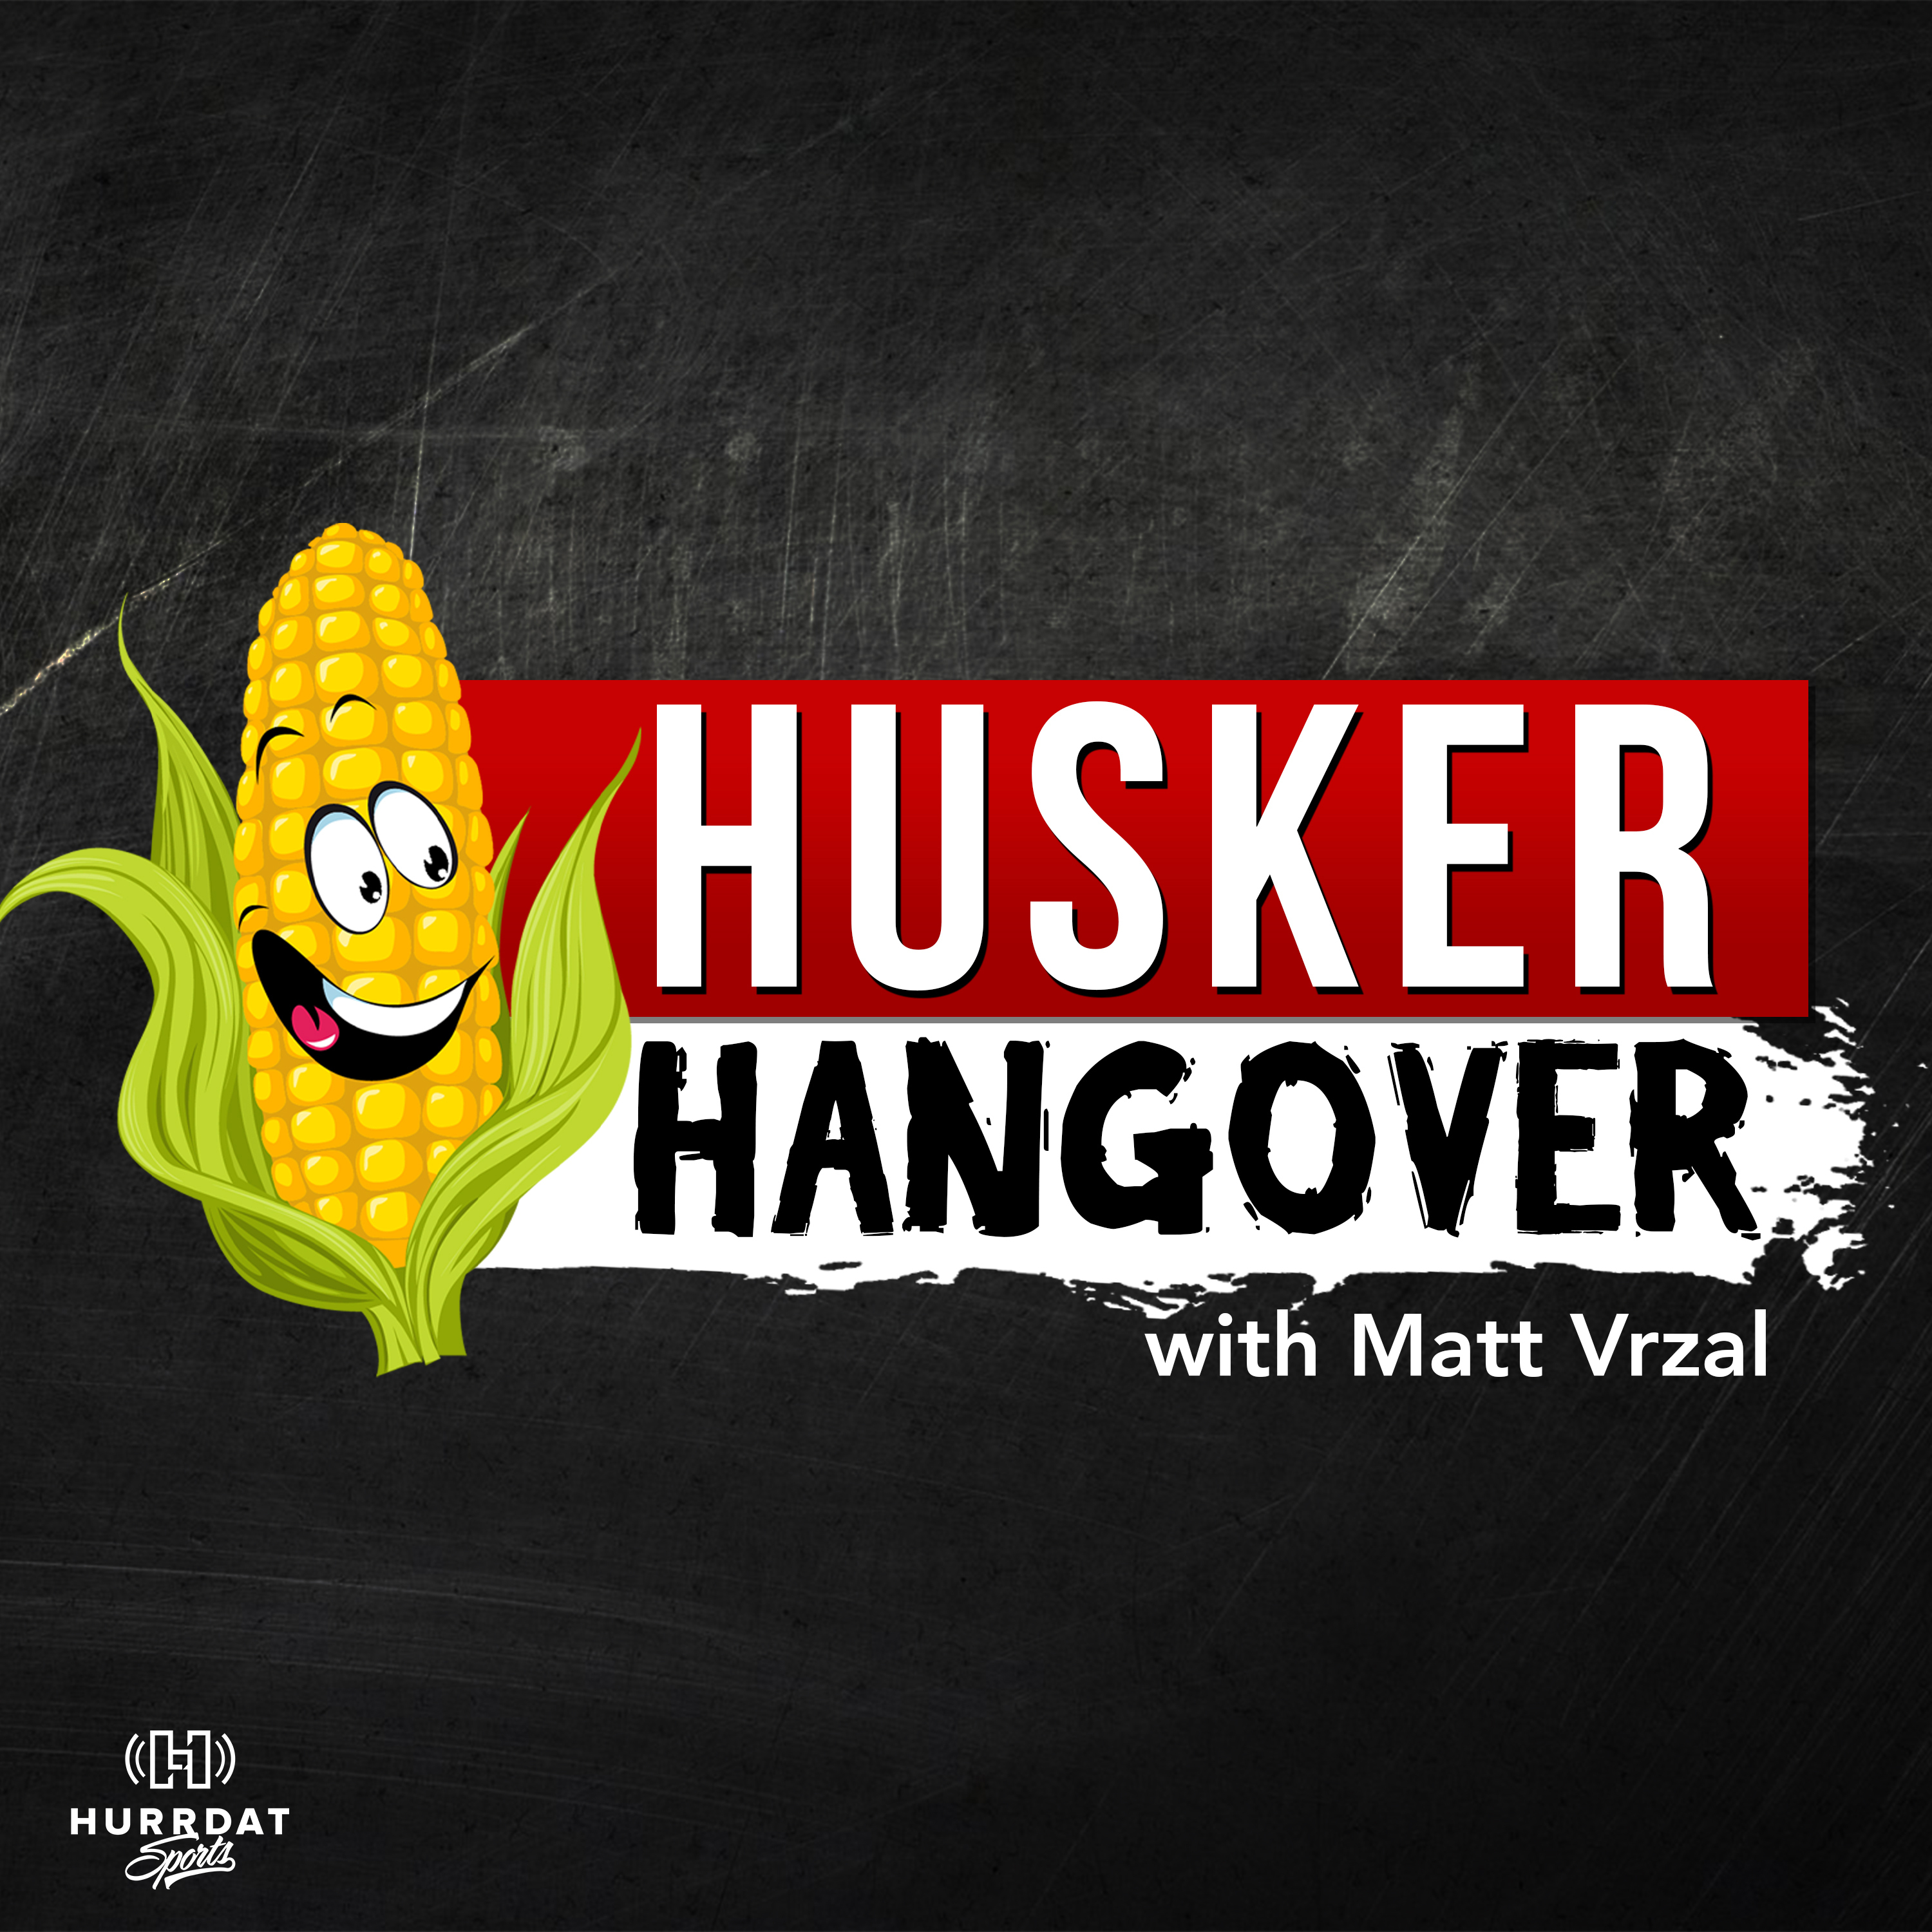 Husker Hangover with Matt Vrzal